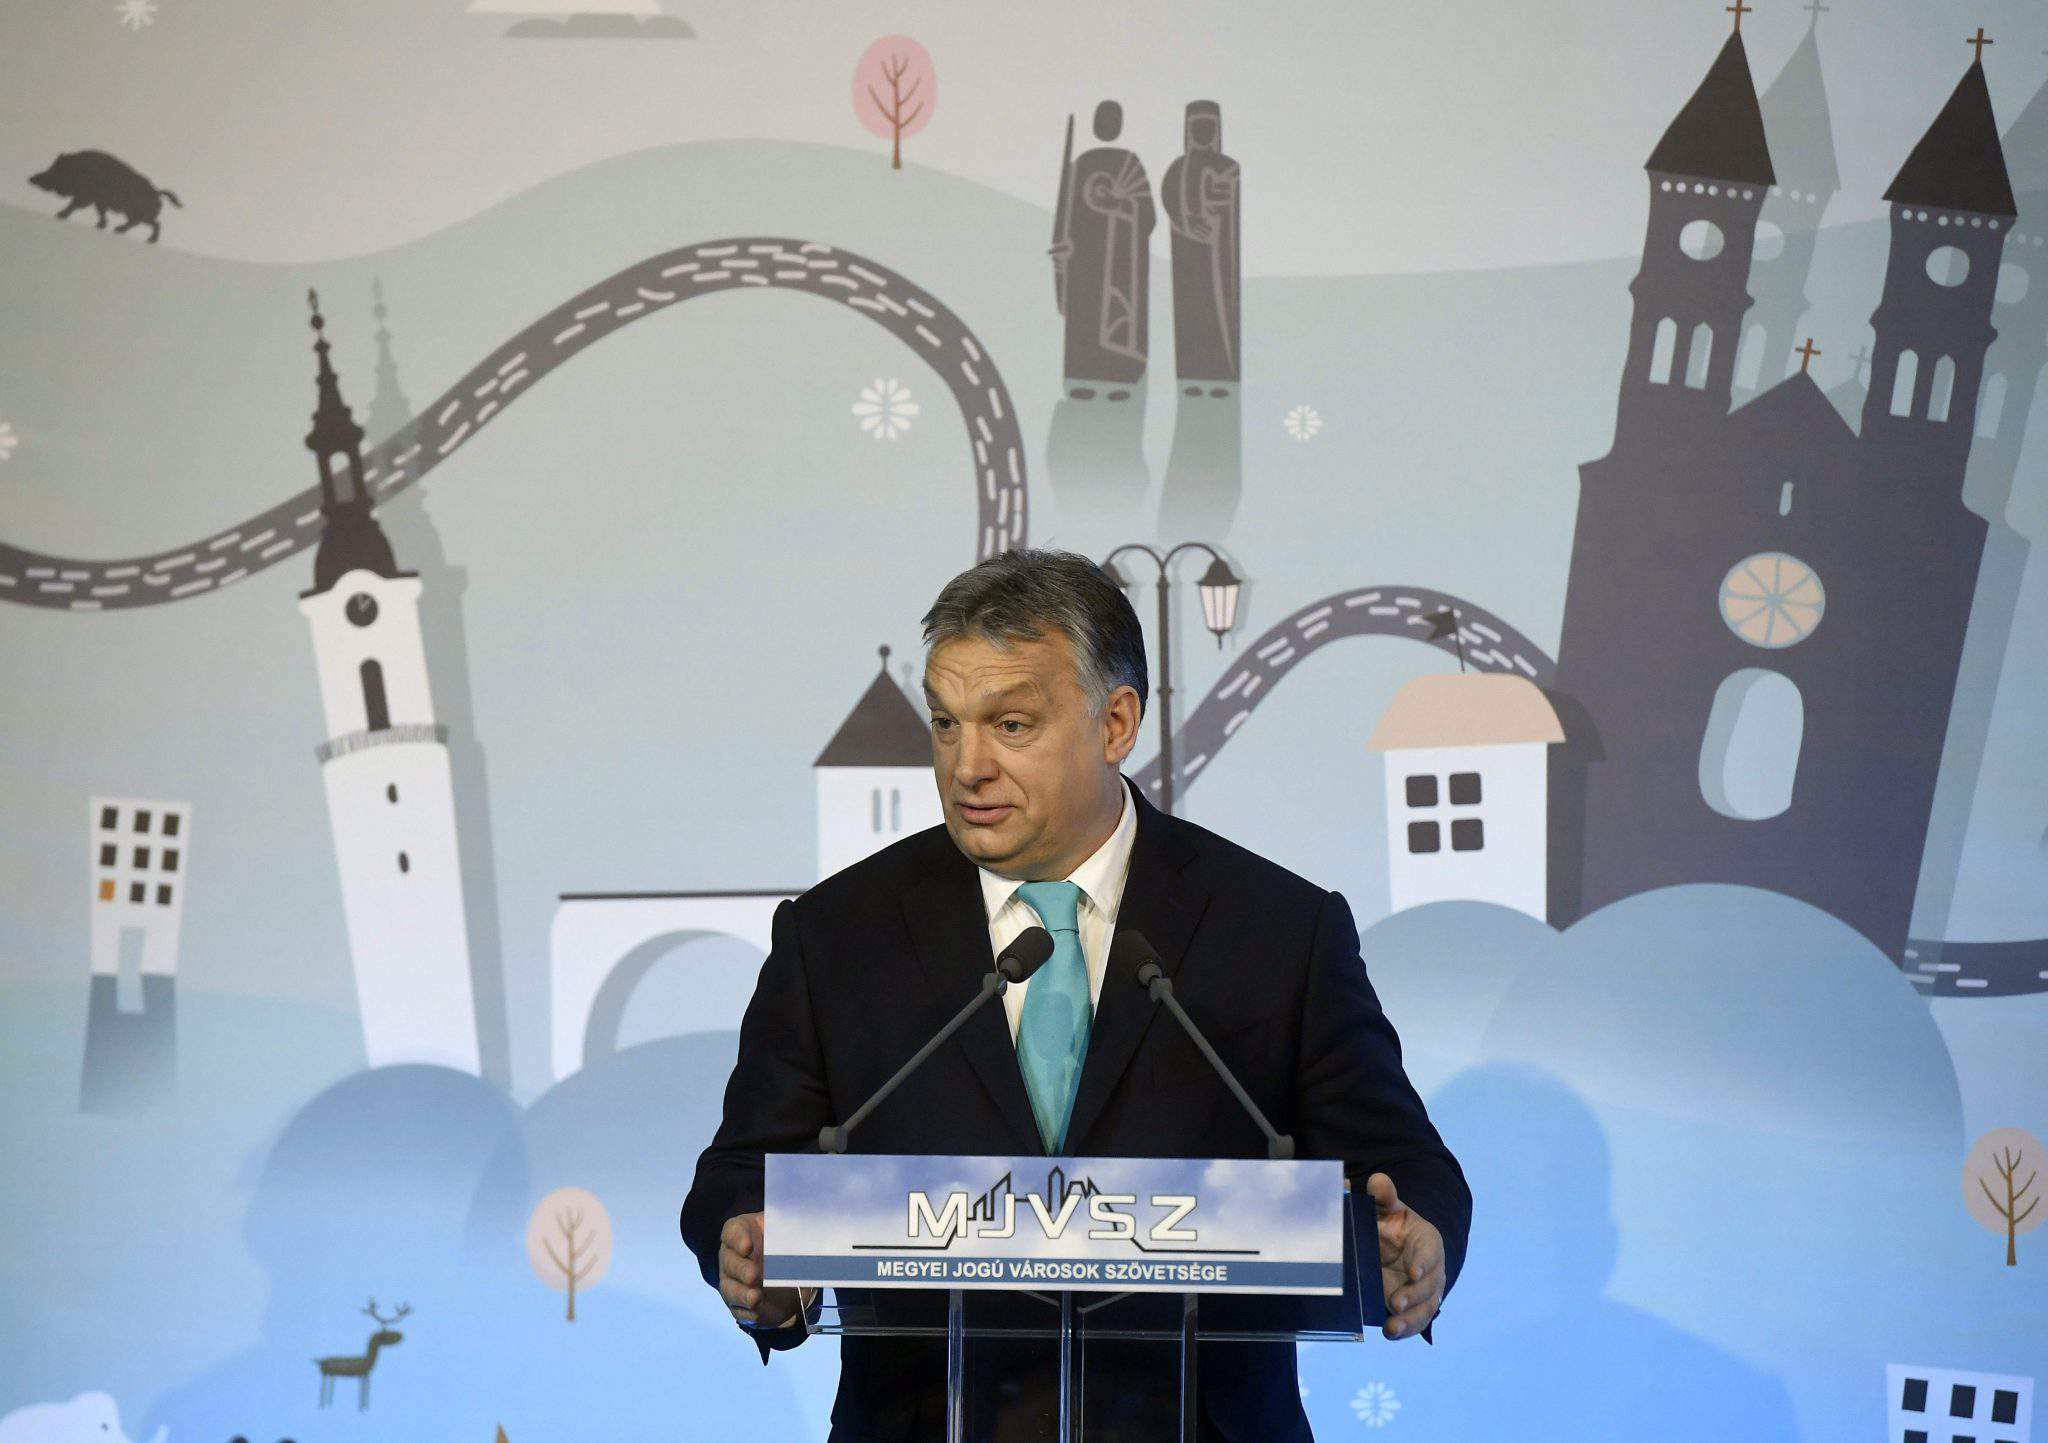 viktor orbán parla del primo ministro di Veszprém